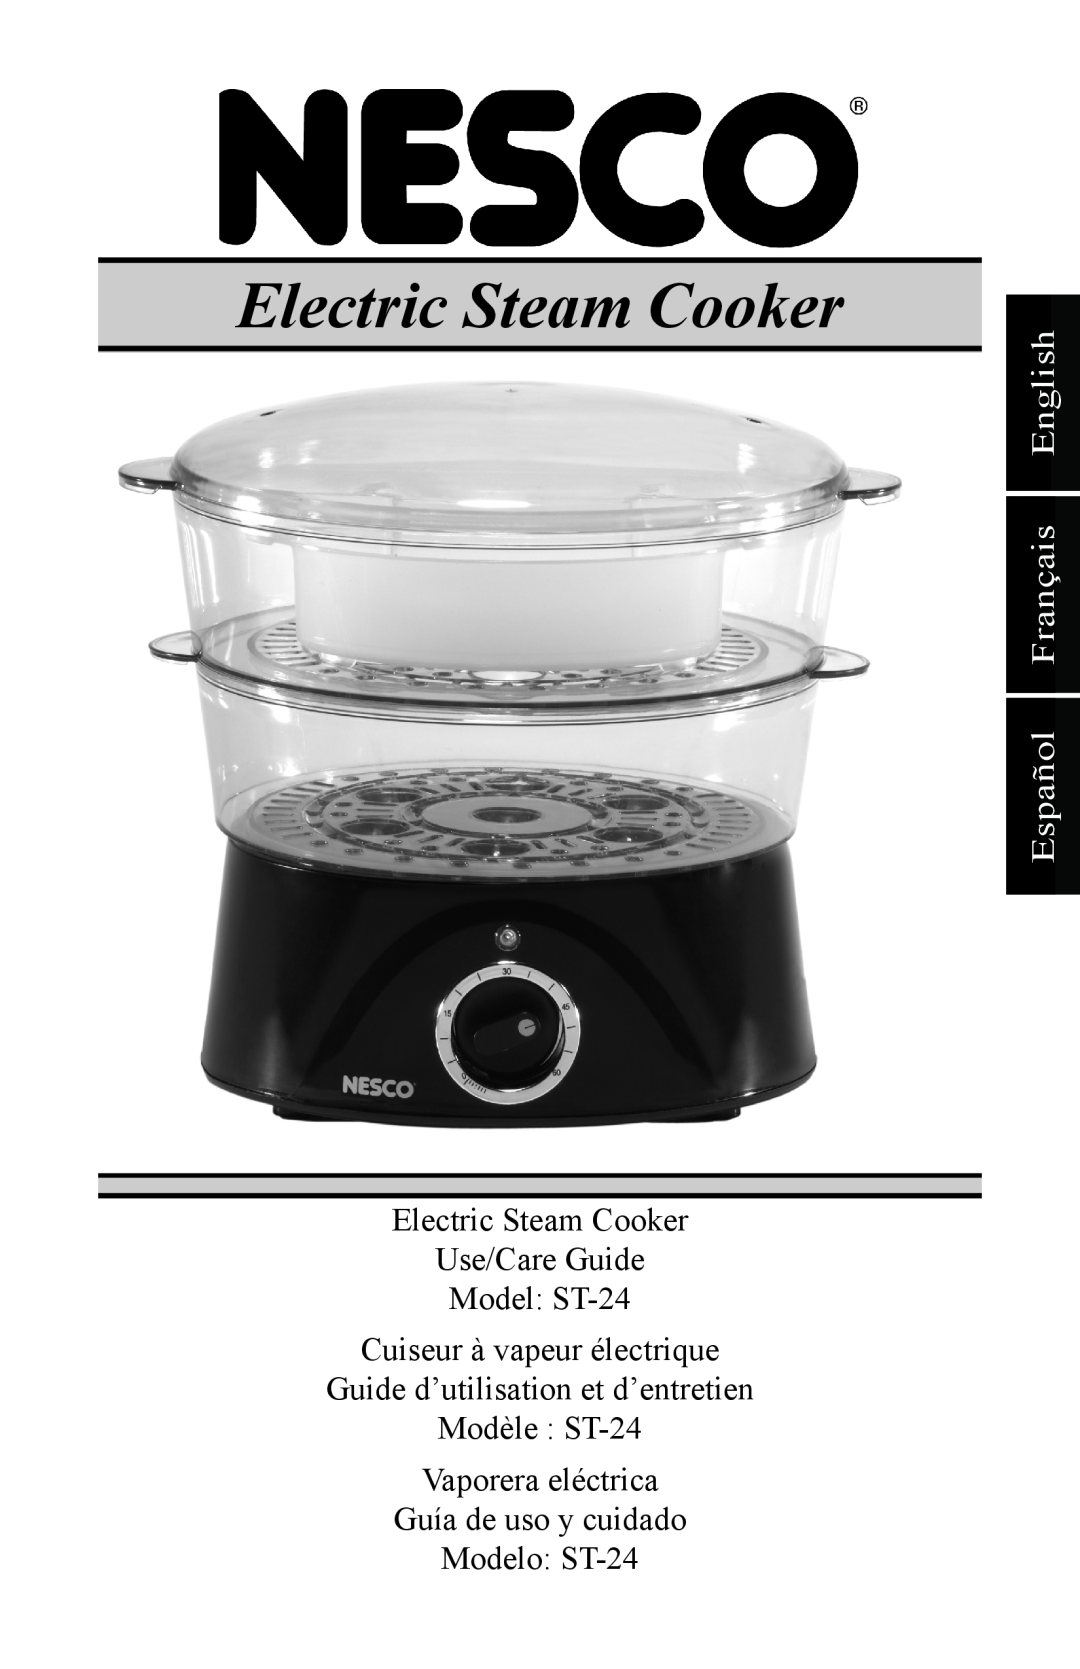 Nesco manual Español Français English, Electric Steam Cooker Use/Care Guide Model ST-24, Cuiseur à vapeur électrique 